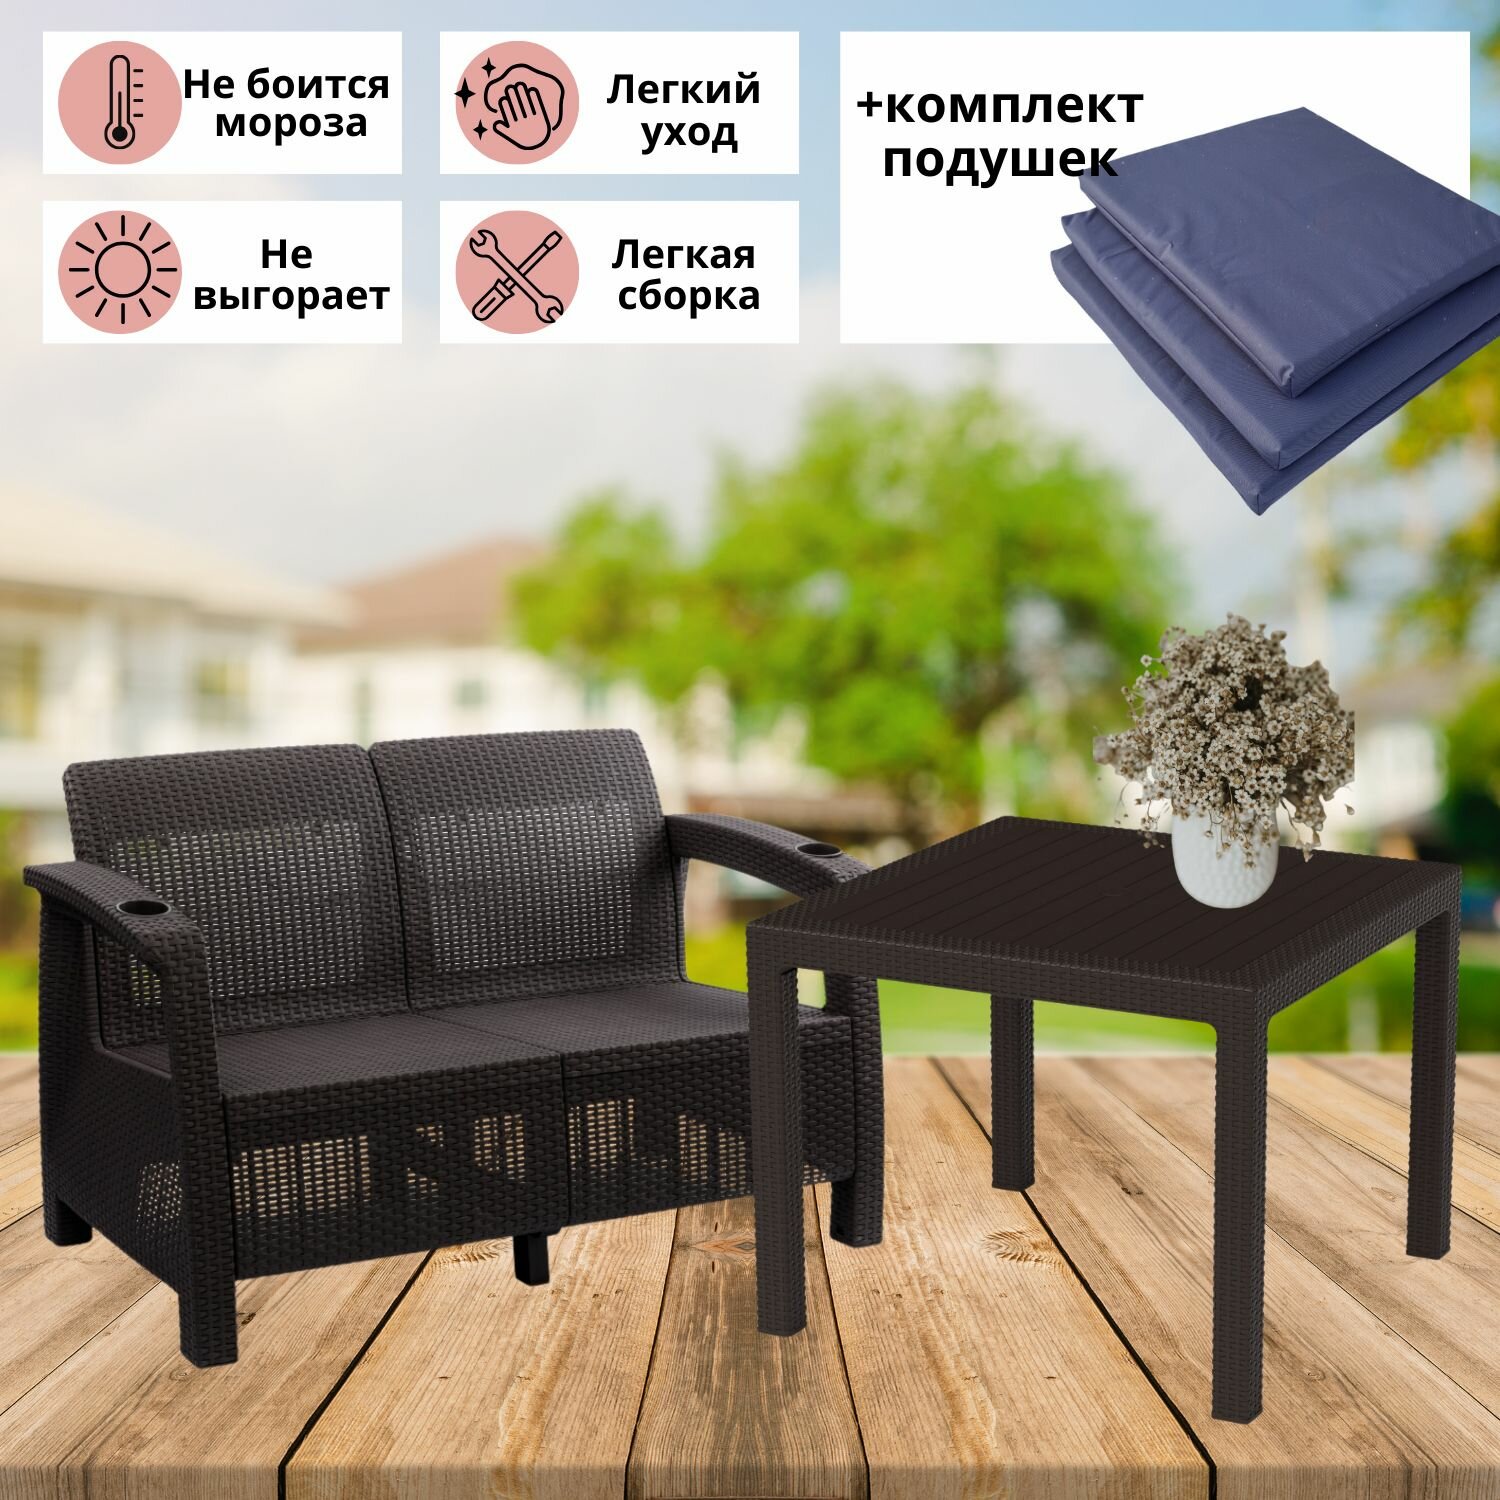 Садовая мебель. Комплект Фазенда-2 двухместный диван и обеденный стол искуственный ротанг мокко темно-синие подушки